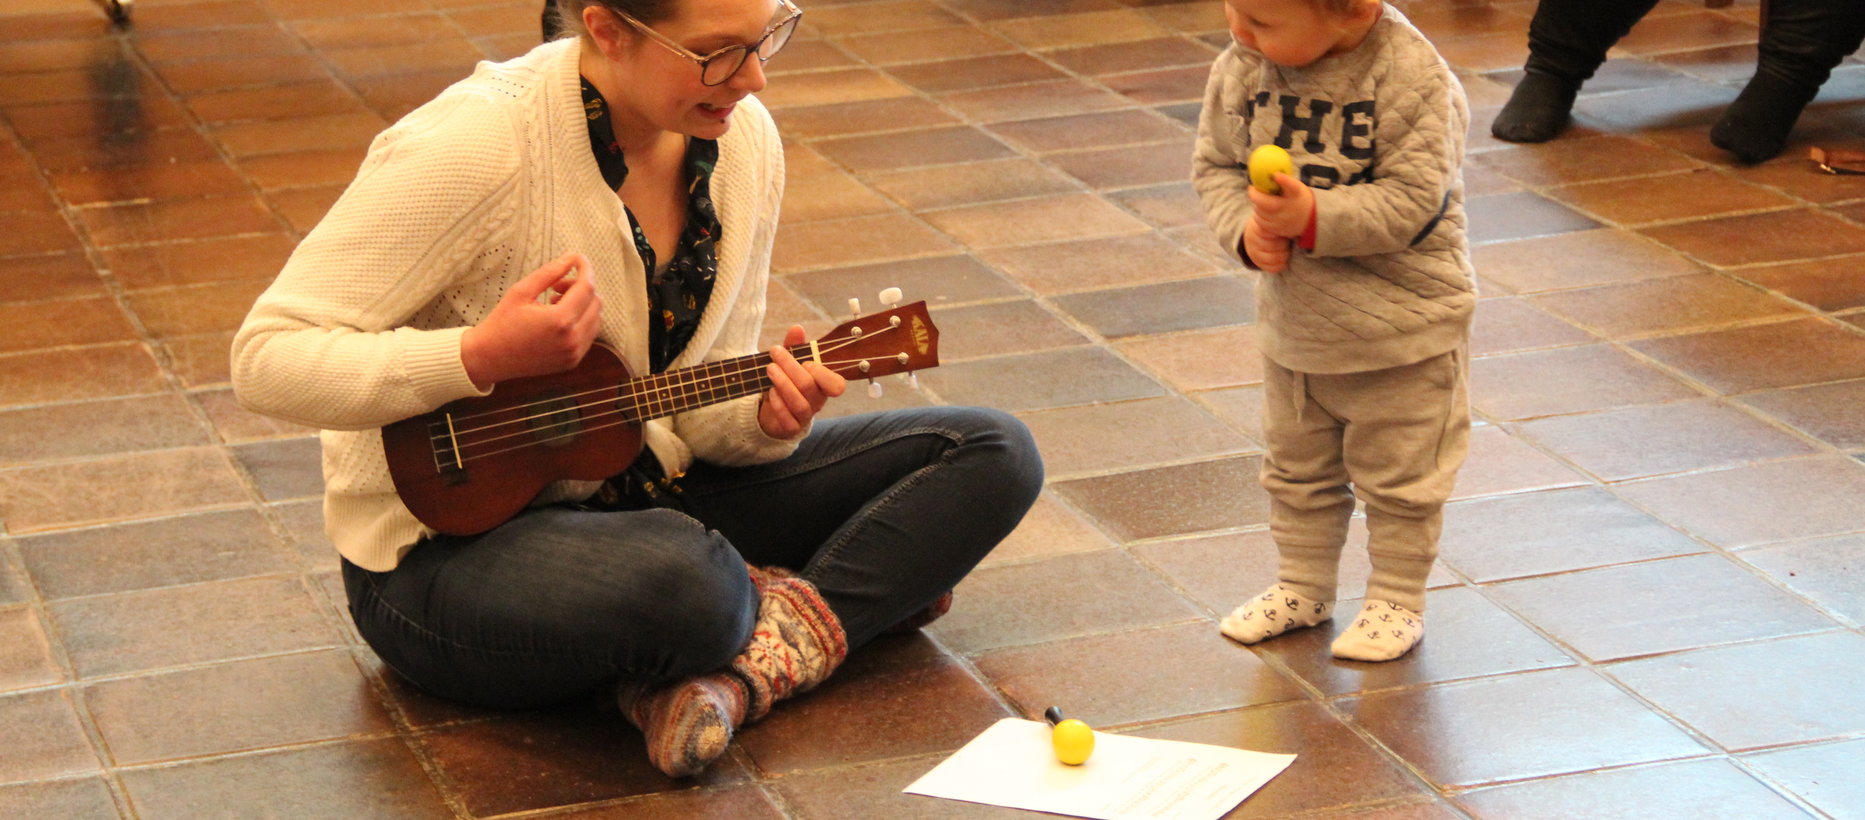 Nainen istuu lattialla ja soittaa ukuleleä, pieni lapsi katsoo vieressä.